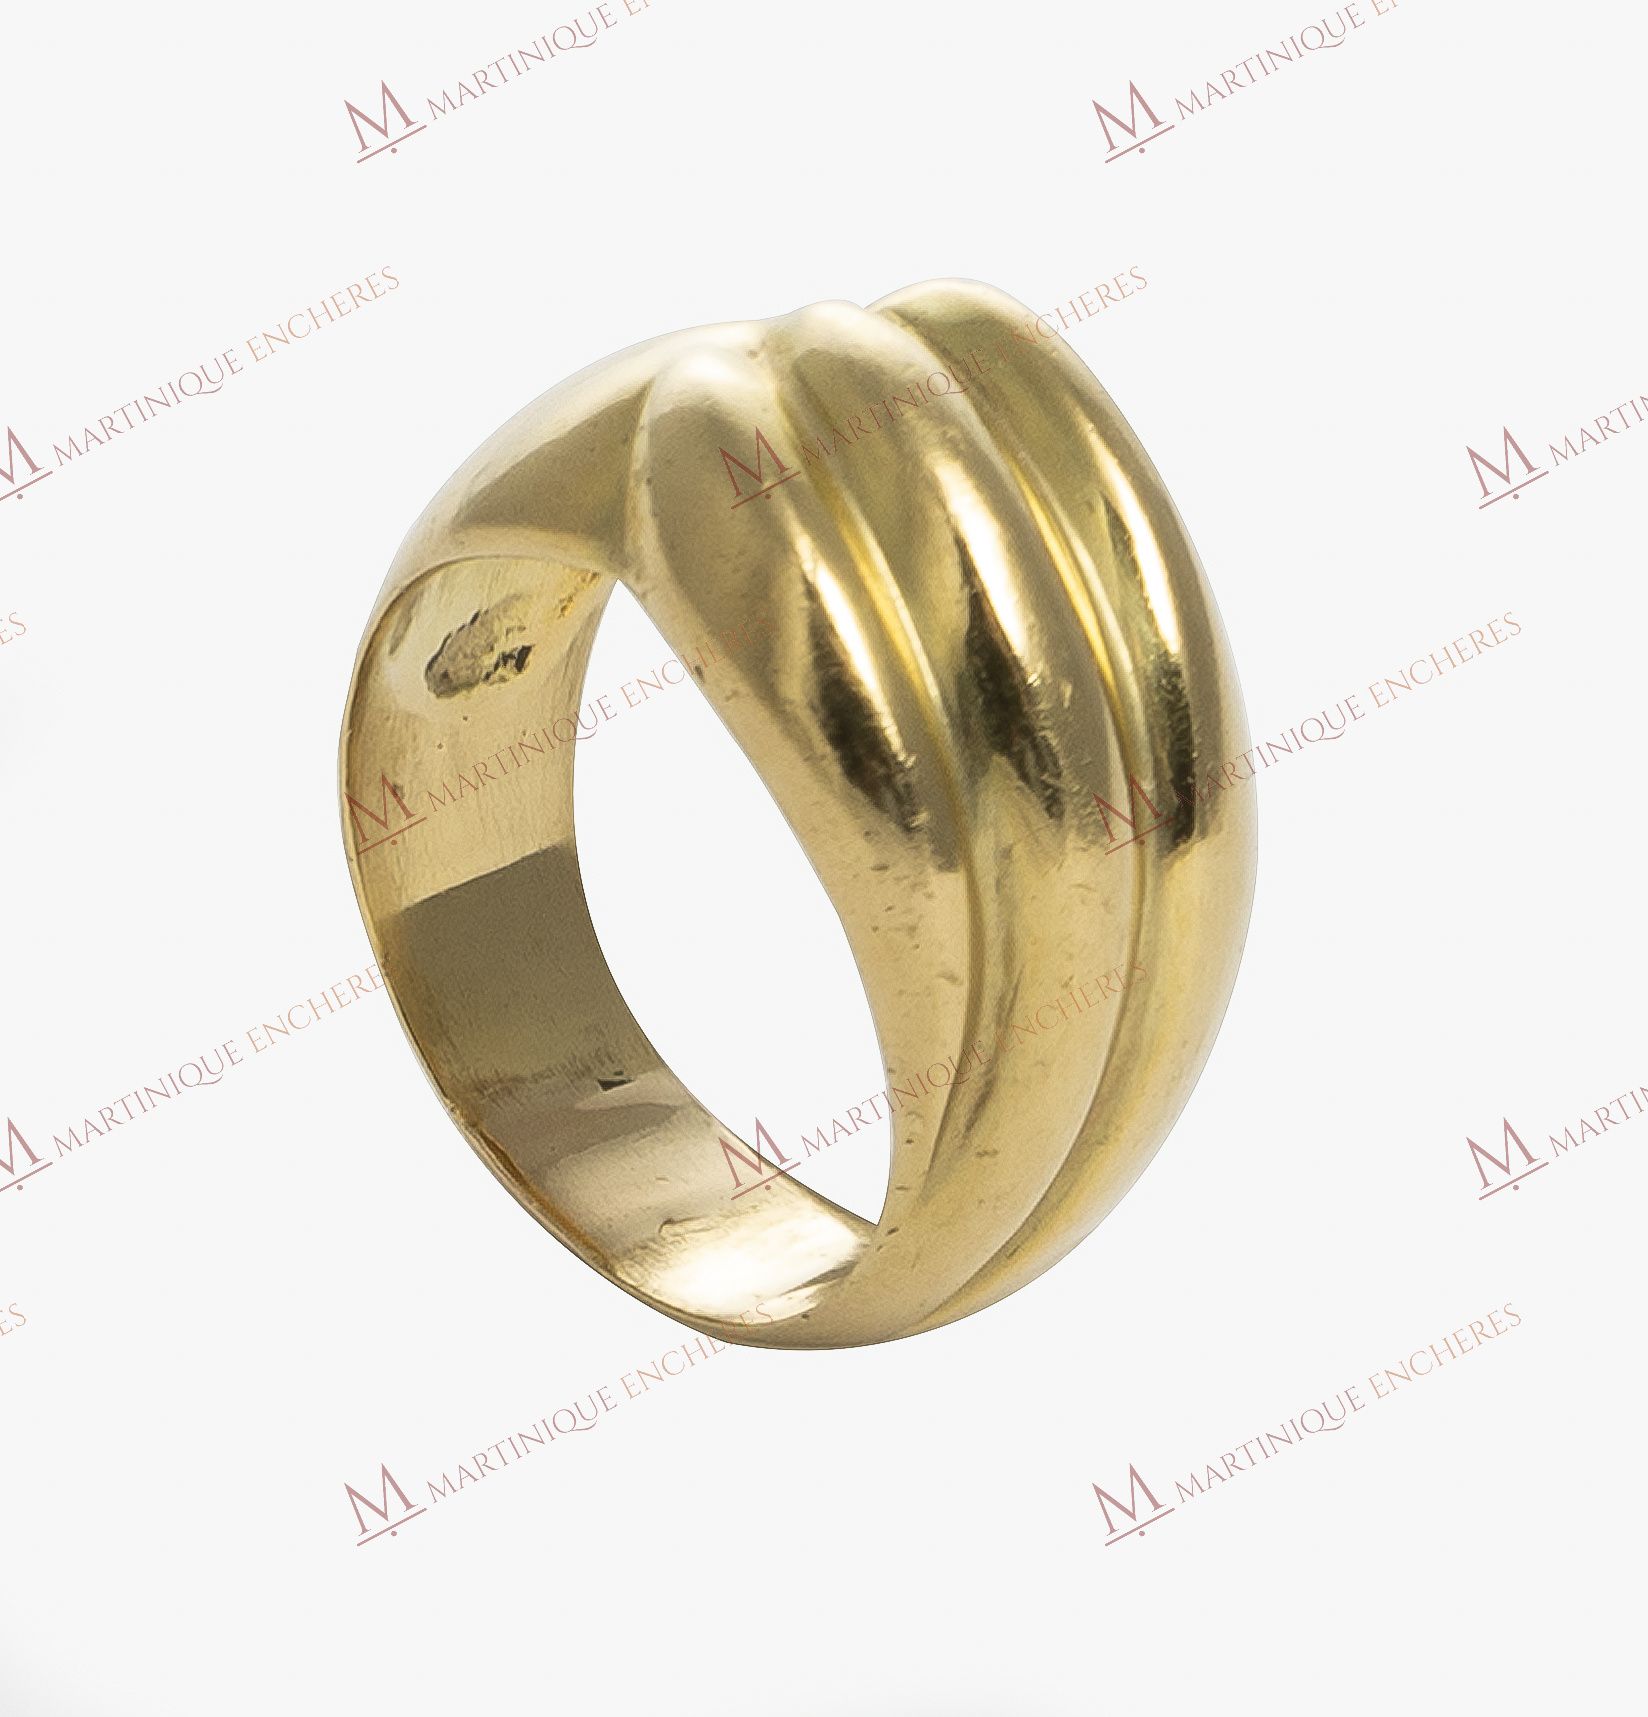 Null Godron-Ring aus 18 Karat Gelbgold 750 Tausendstel.
Gewicht: 5,48 g.
TDD 61.